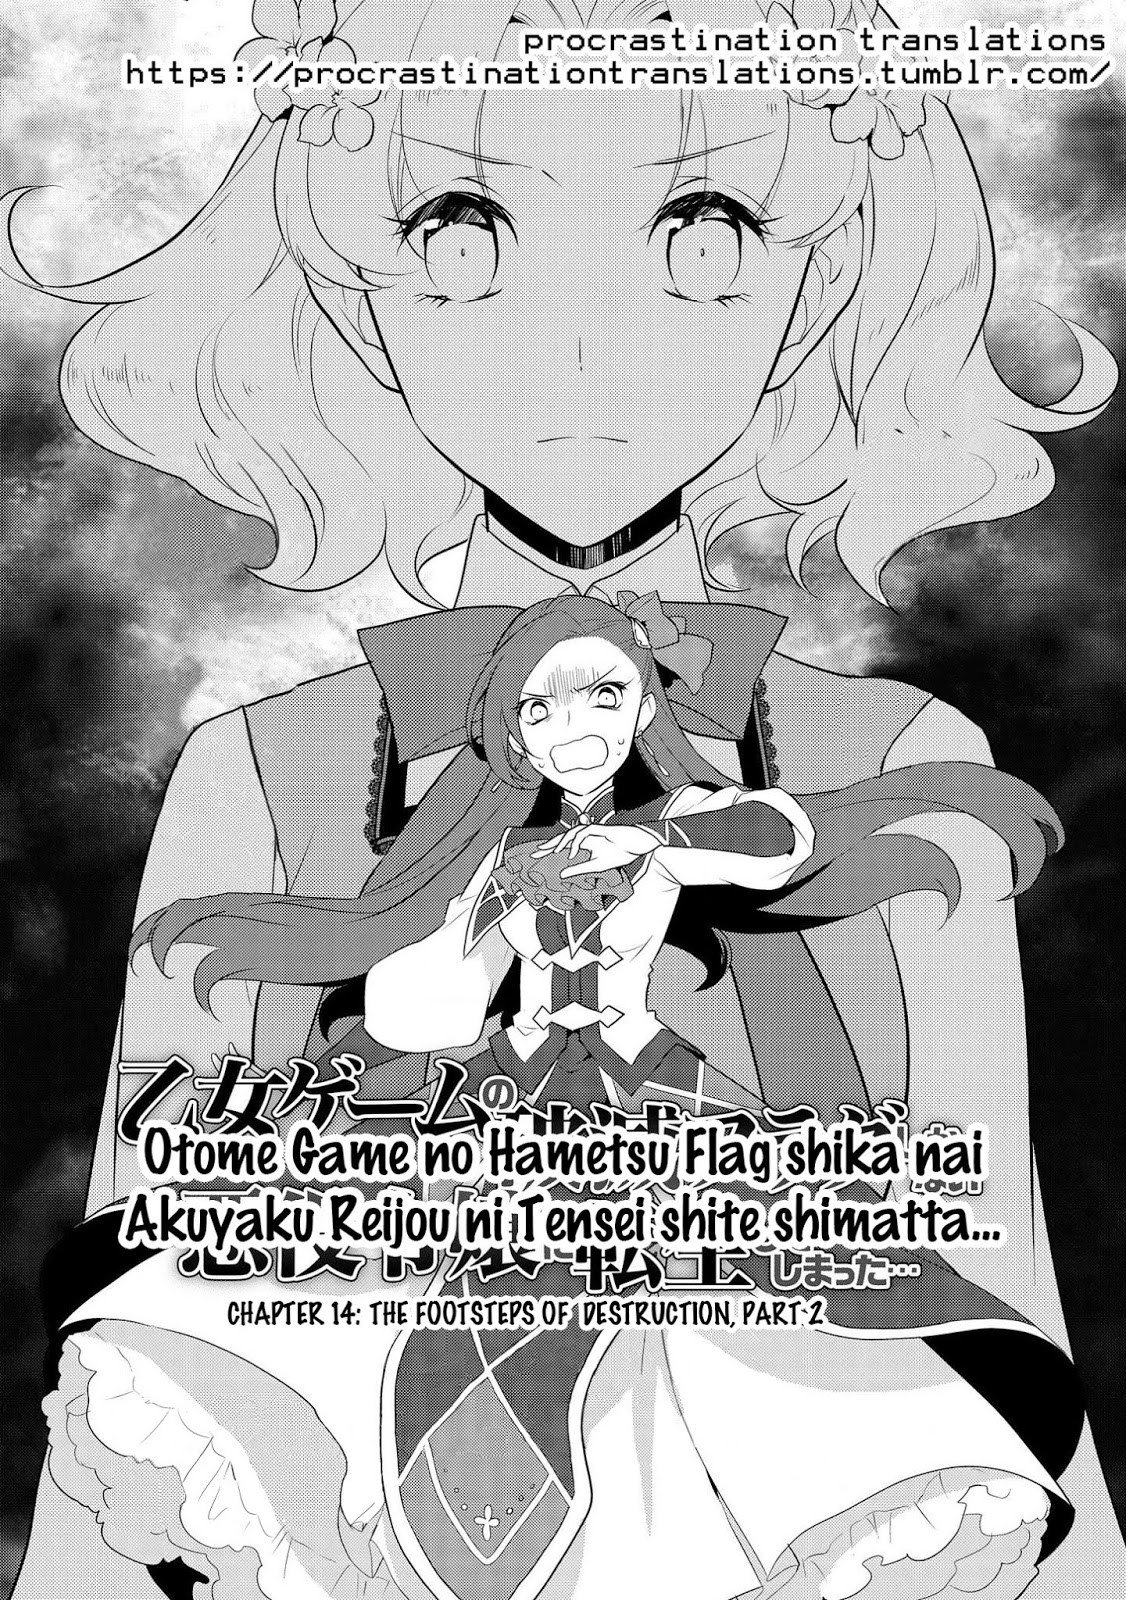 Baca Otome Game no Hametsu Flag shika nai Akuyaku Reijou ni Tensei shite shimatta Chapter 14  - GudangKomik